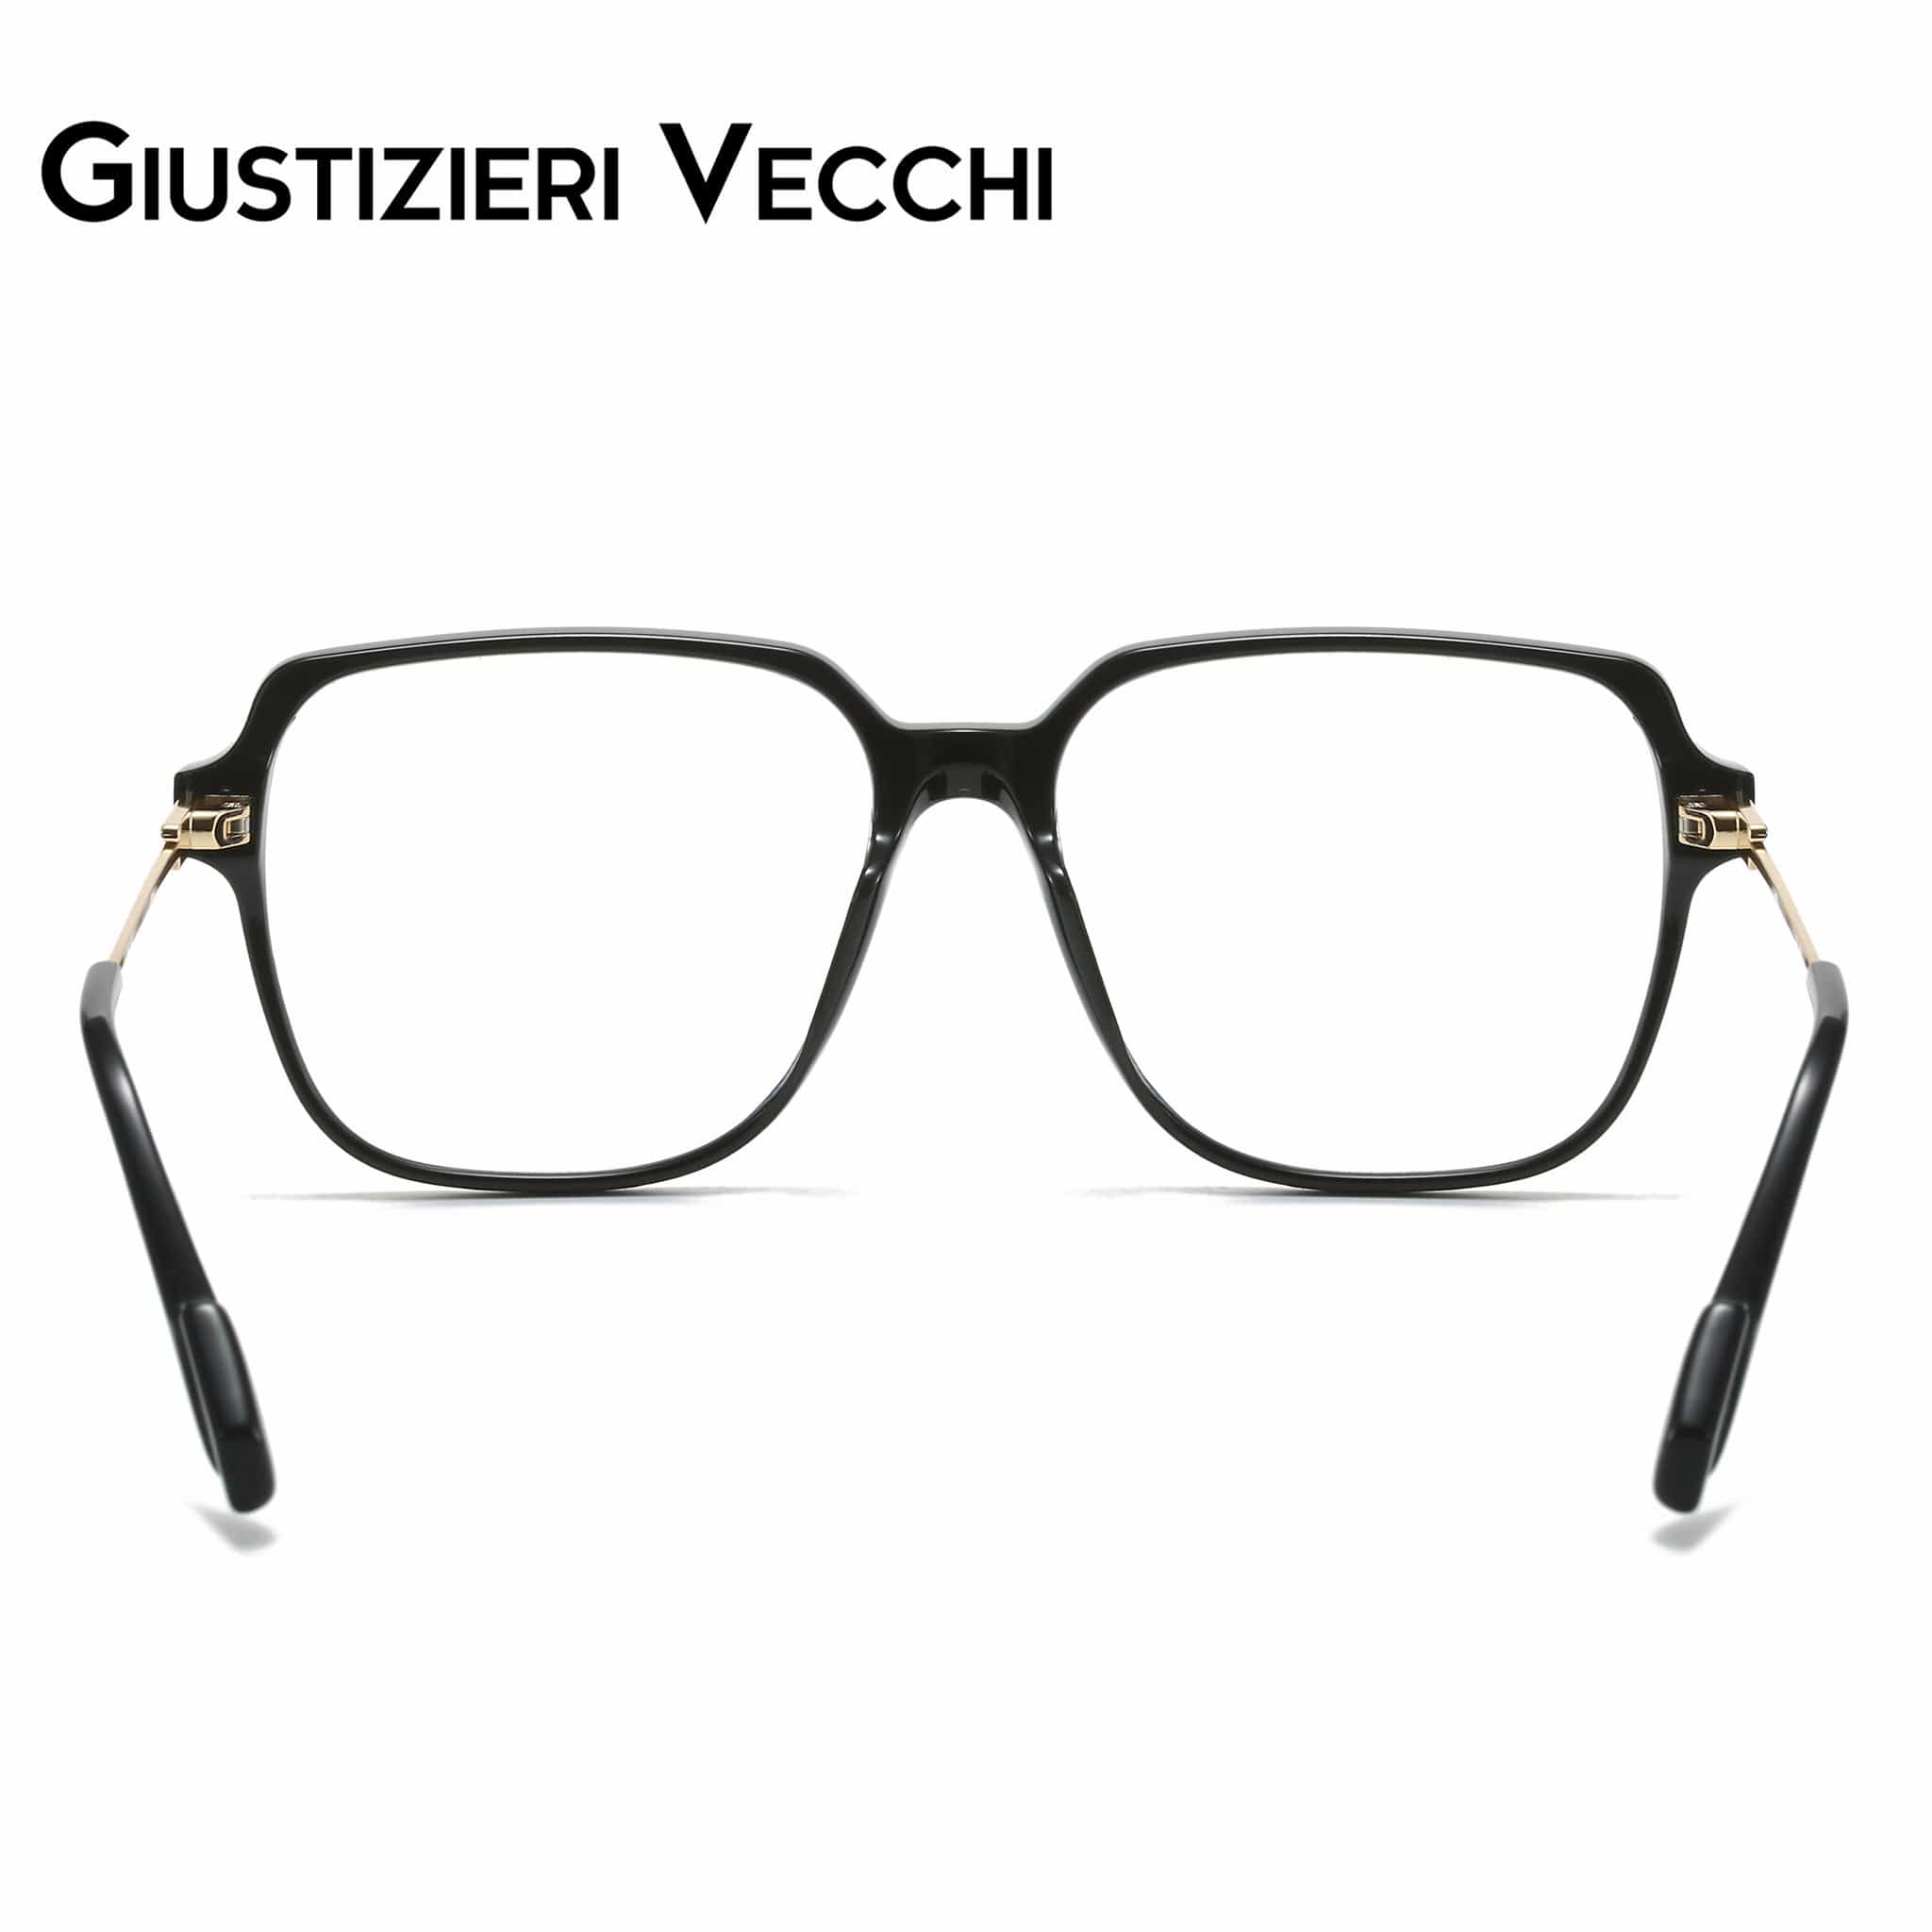 GIUSTIZIERI VECCHI Eyeglasses MysticRider Uno